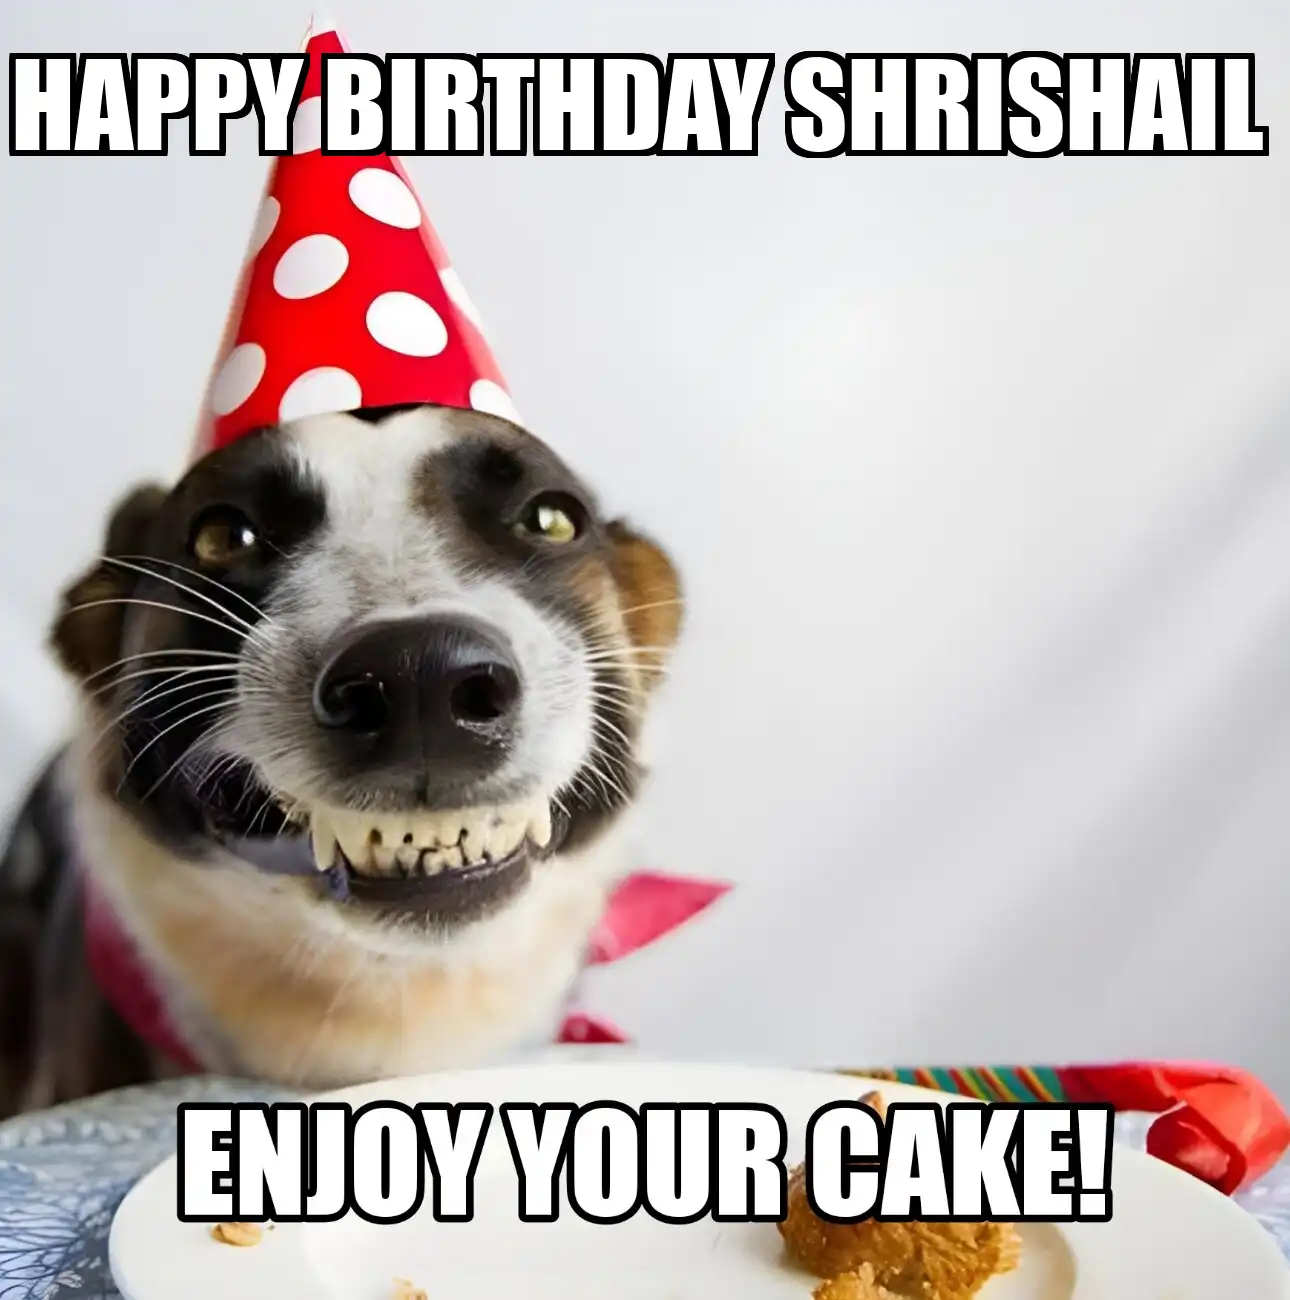 Happy Birthday Shrishail Enjoy Your Cake Dog Meme